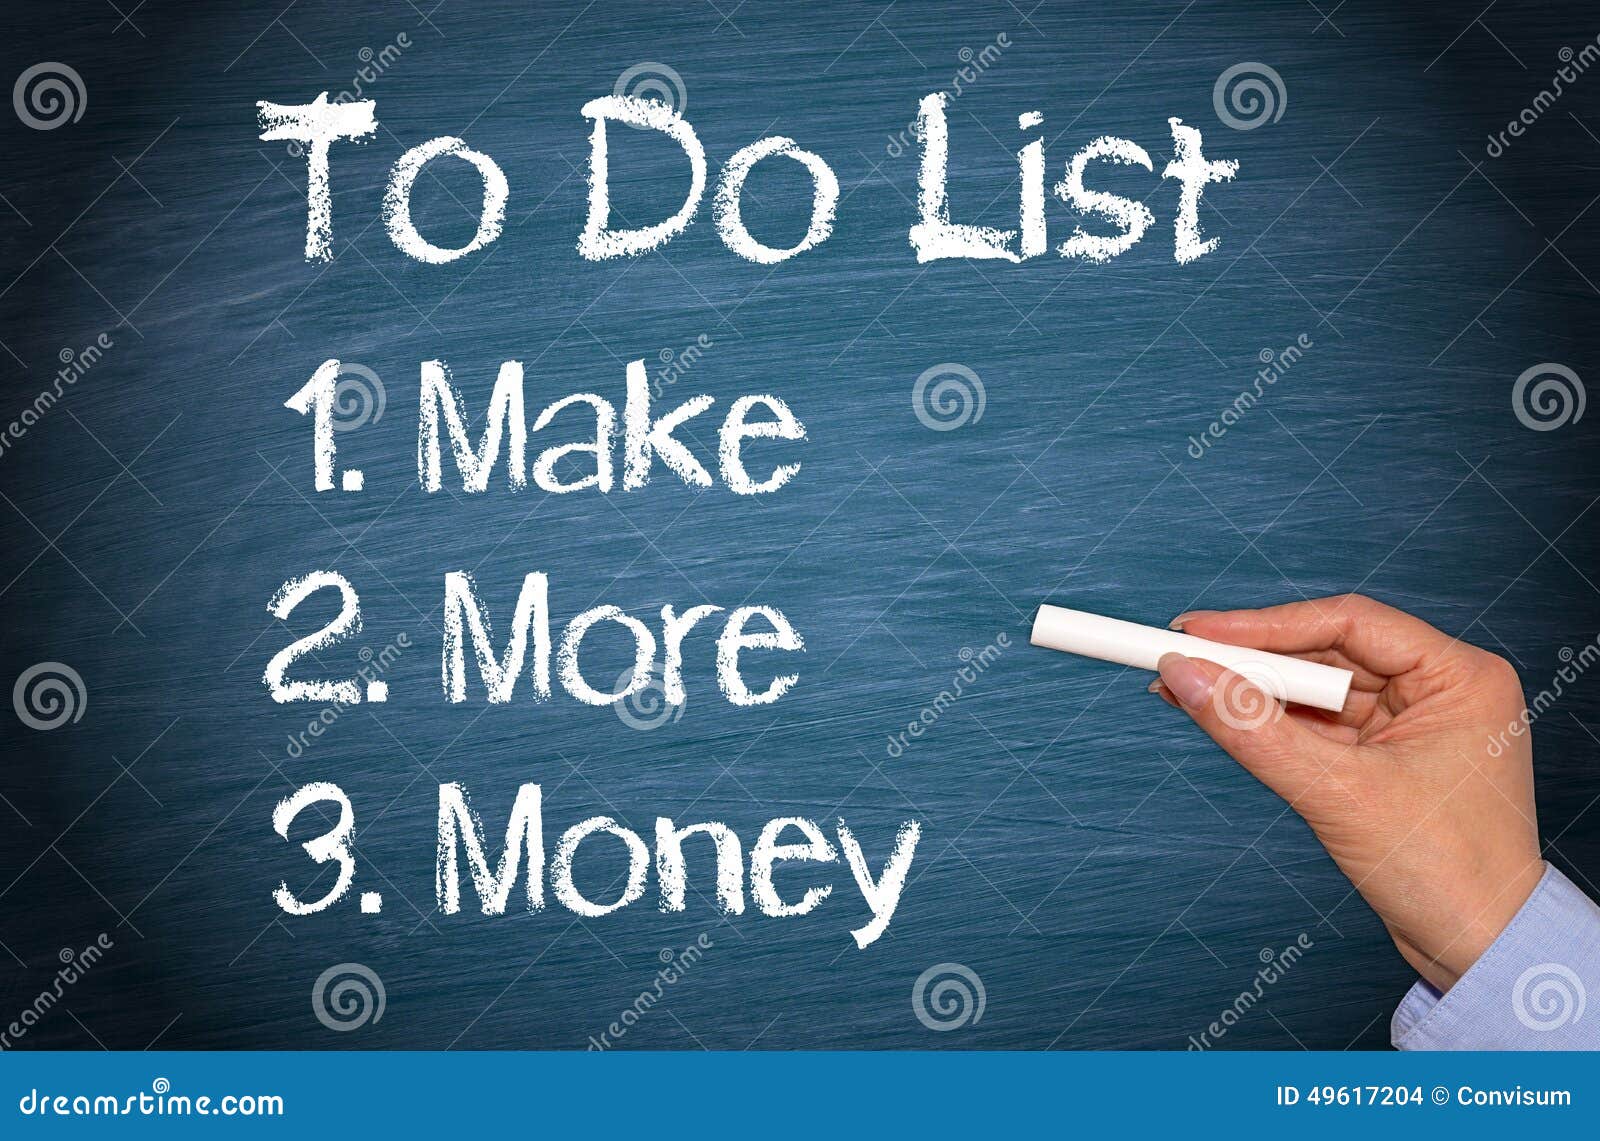 make more money to do list